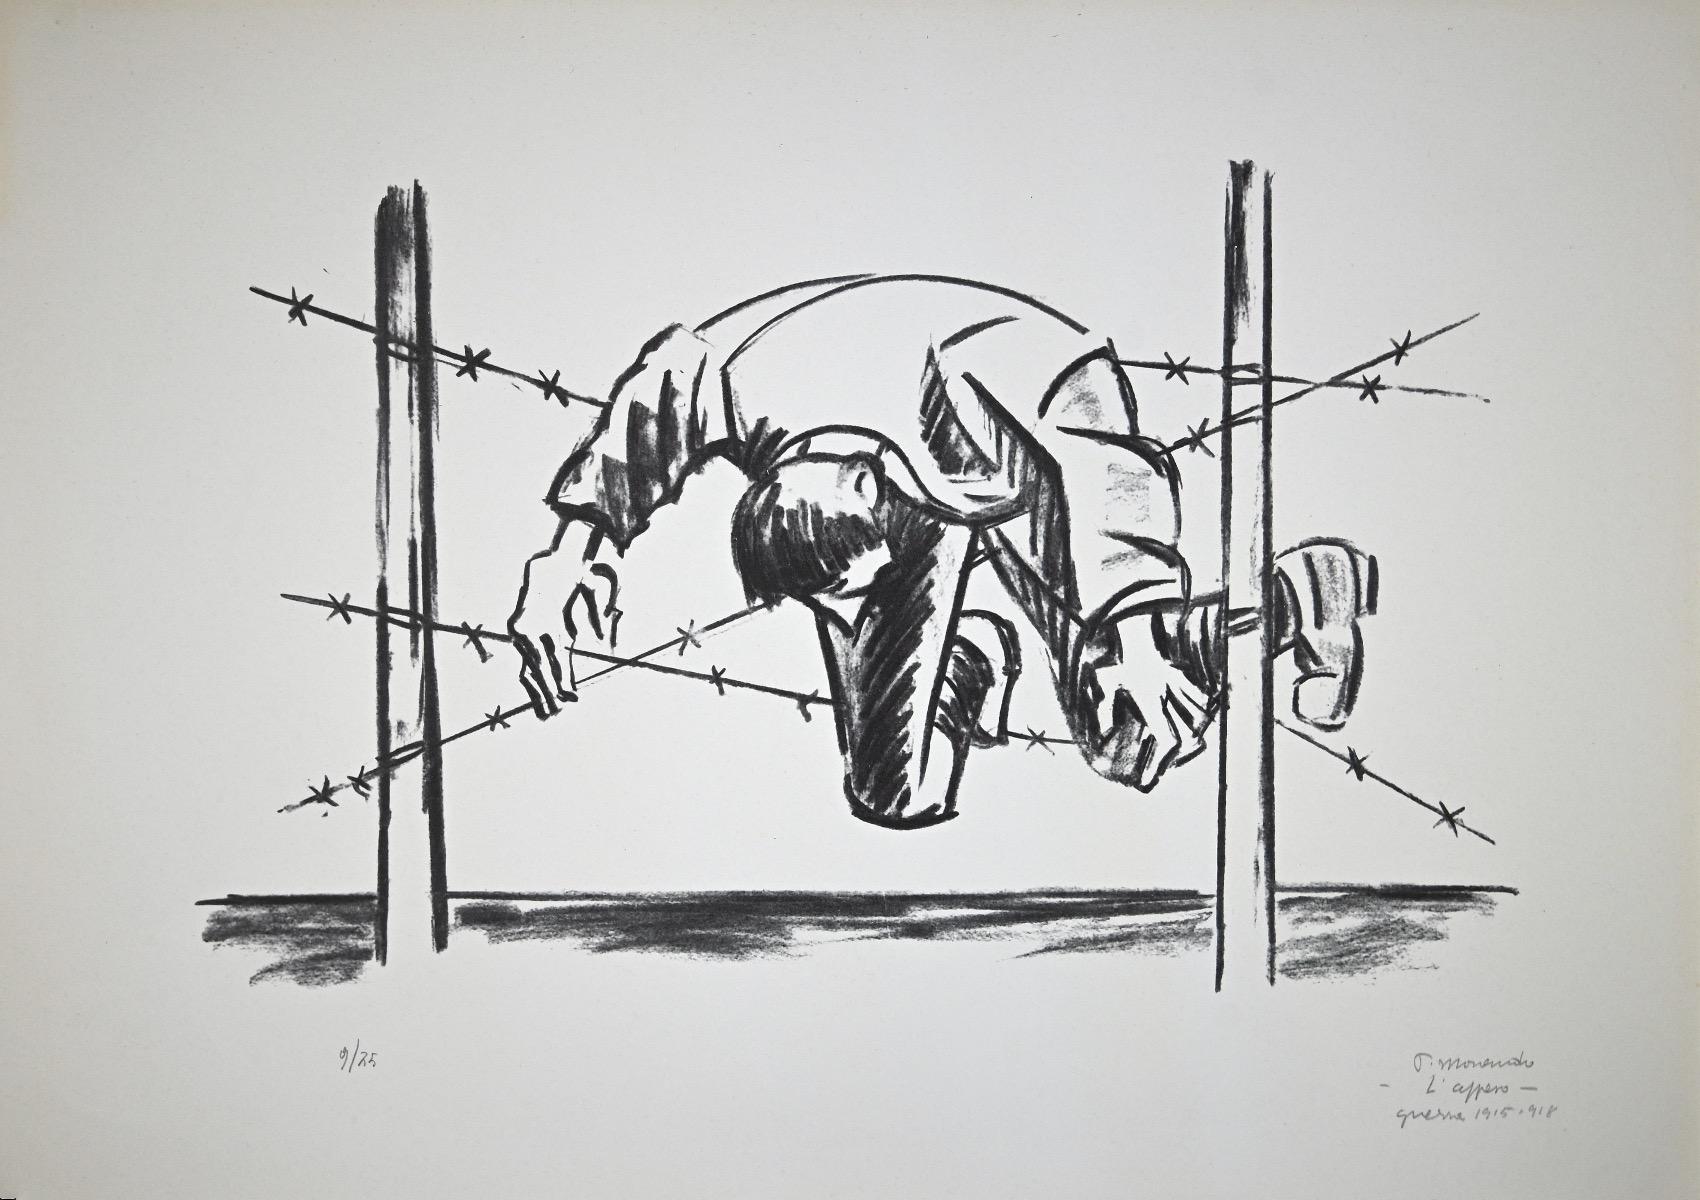 The Hanging One - Original Lithograph by Pietro Morando - 1975 ca.